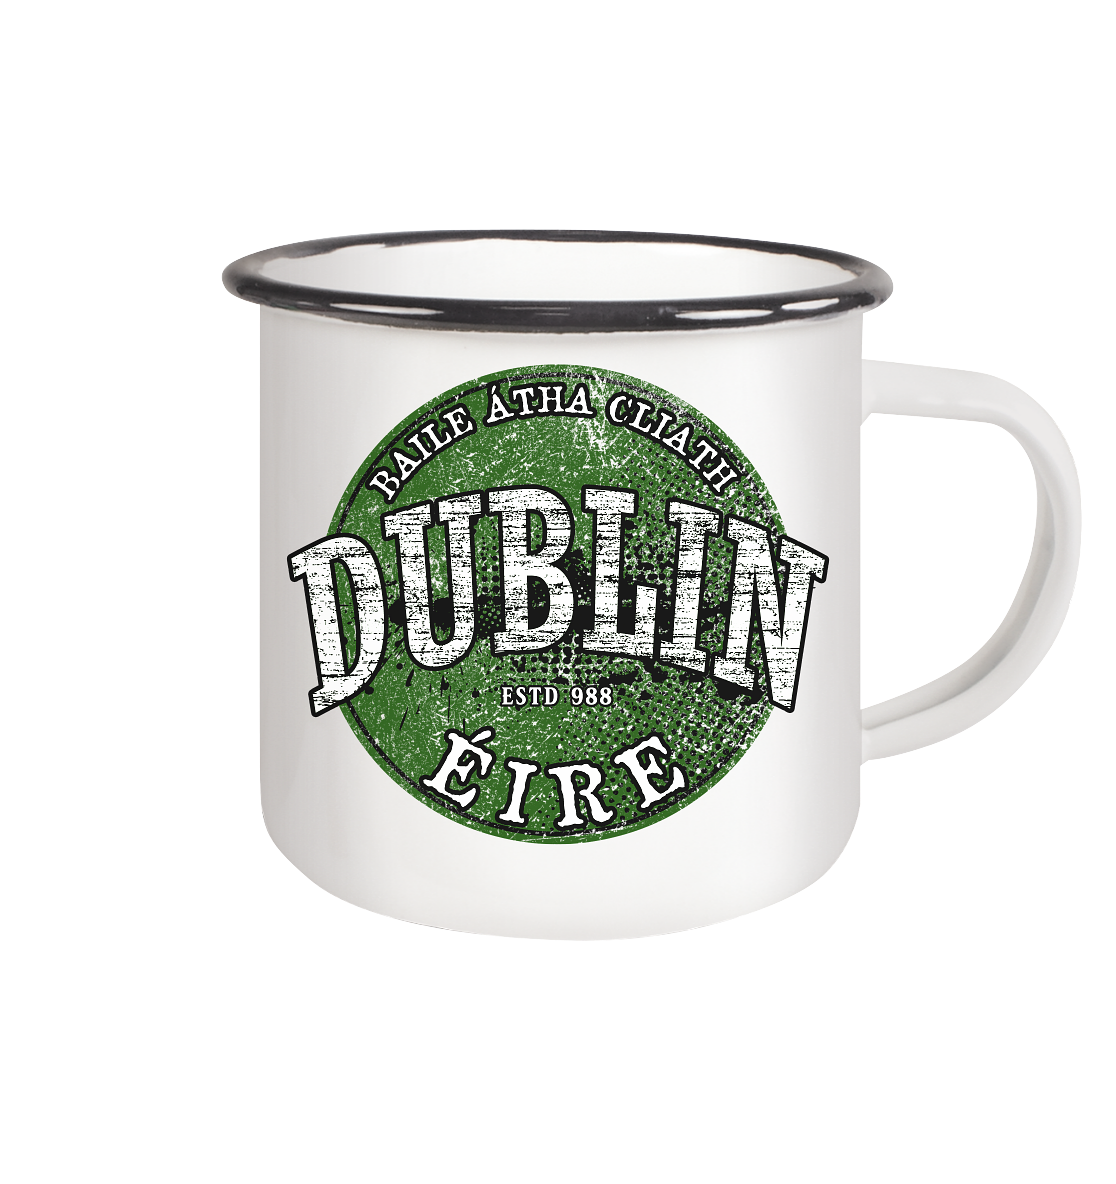 Dublin "Estd 988 / Baile Átha Cliath / Éire" - Emaille Tasse (Black)